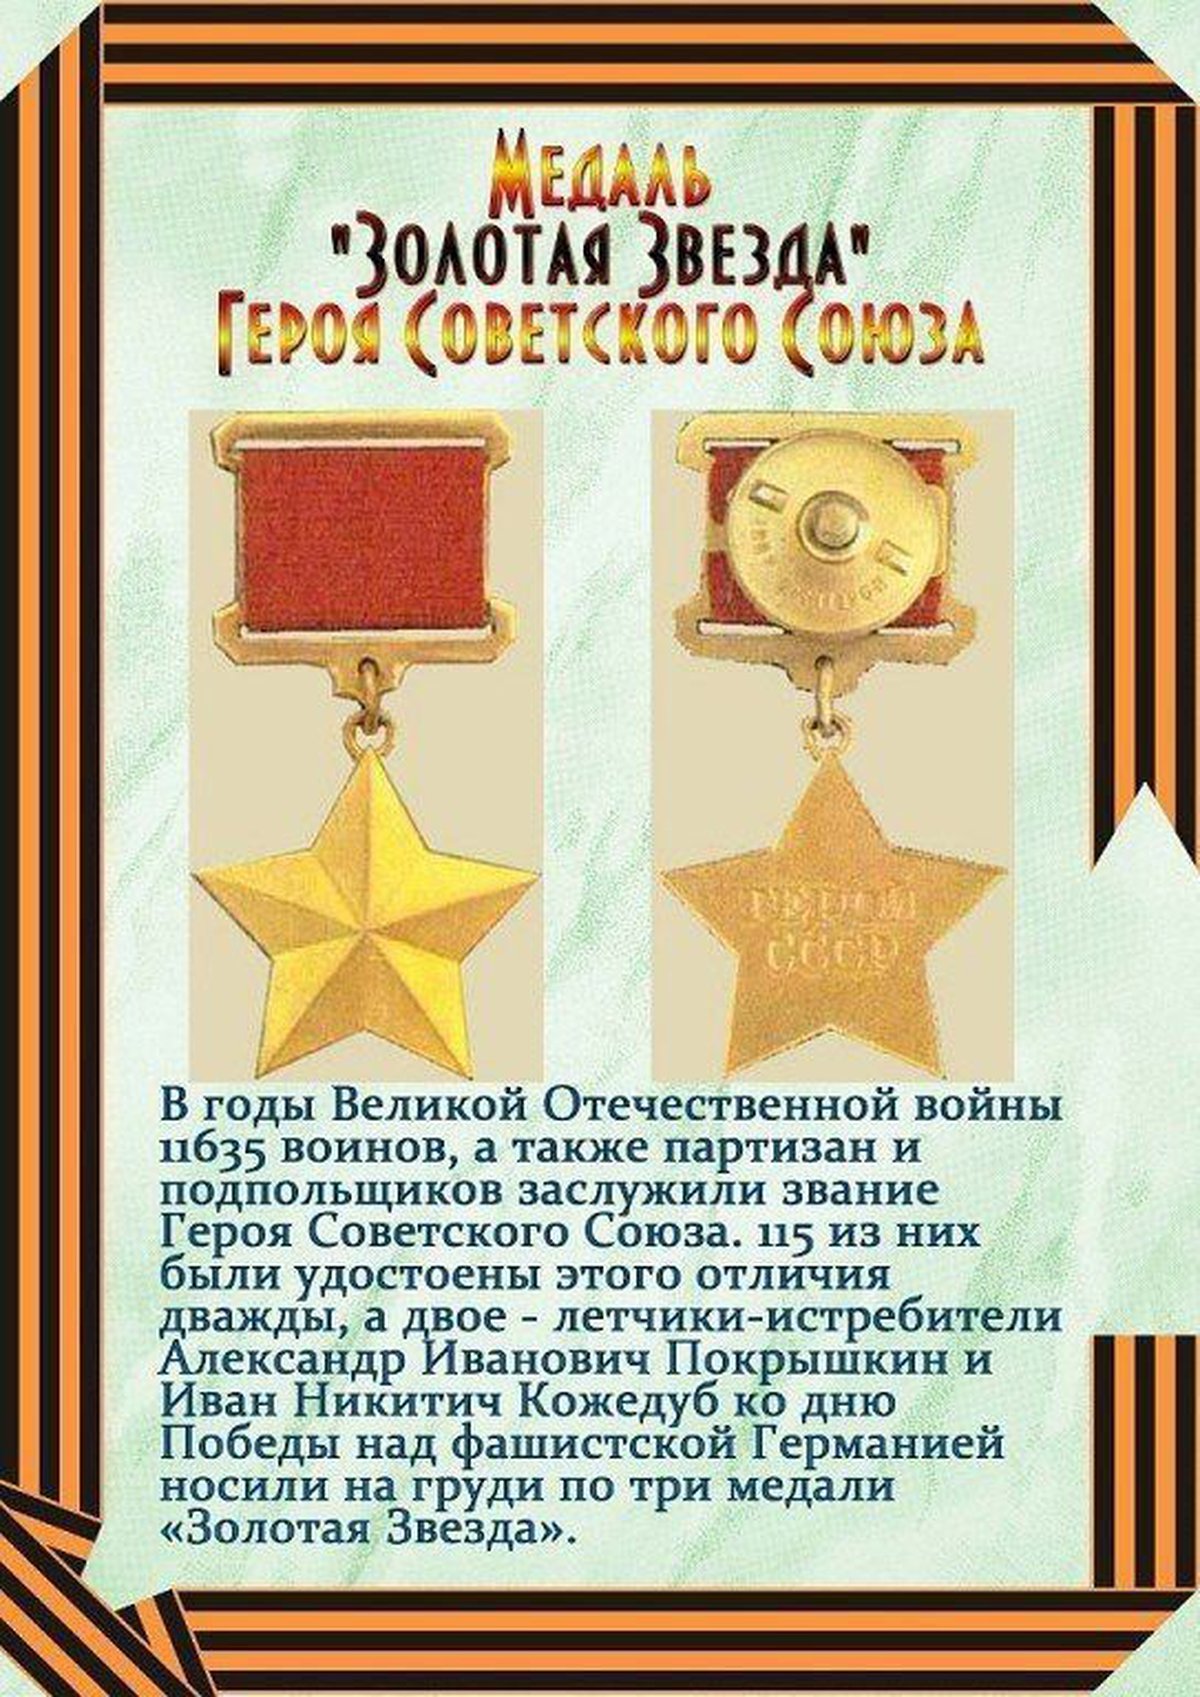 награды великой отечественной войны 1941 1945 фото